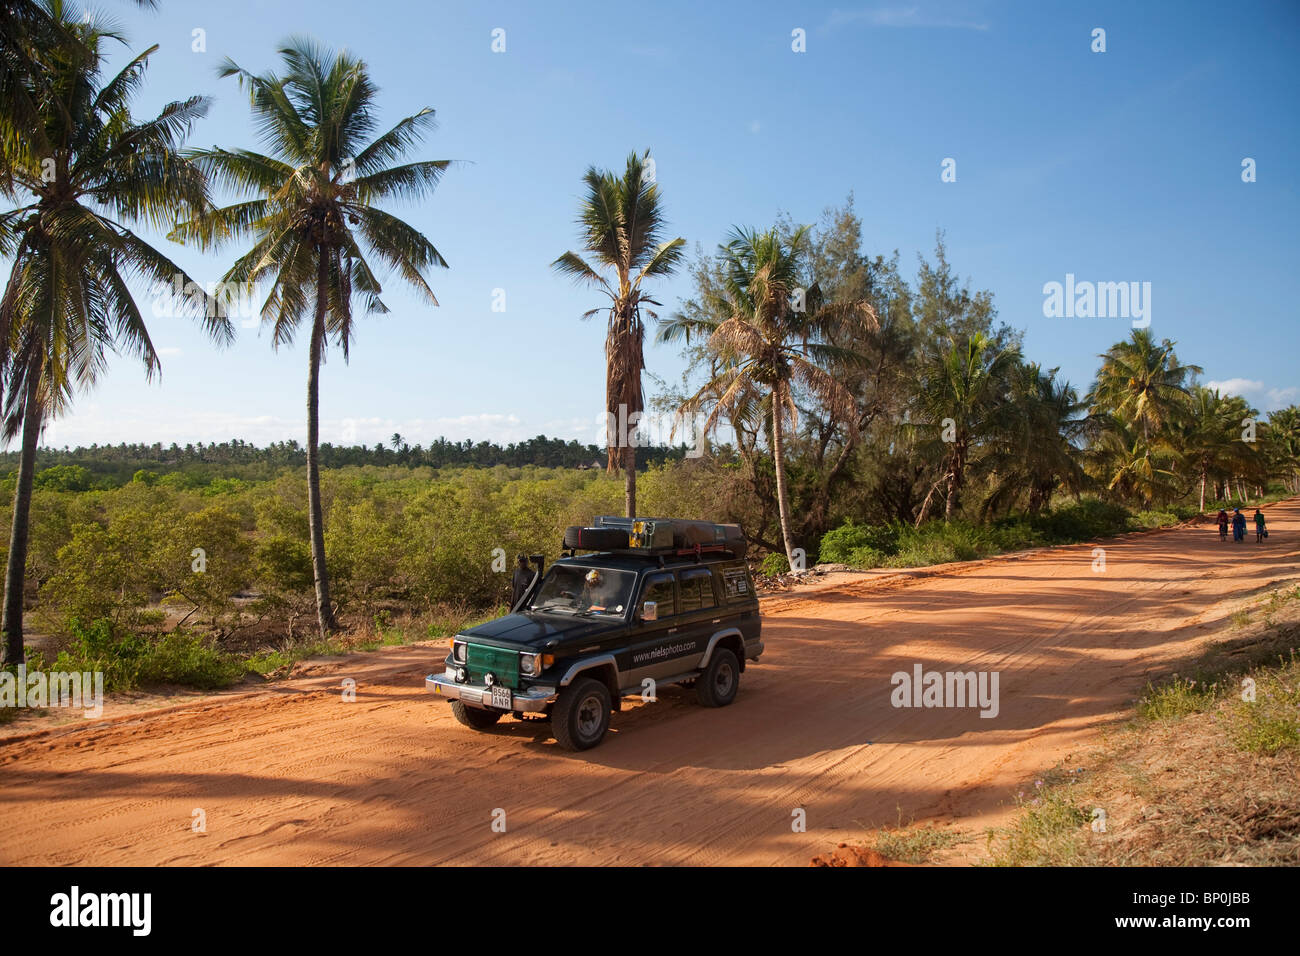 Le Mozambique, Tofo. Un 4x4 le long des routes rouges le long de la côte à Tofo. Banque D'Images